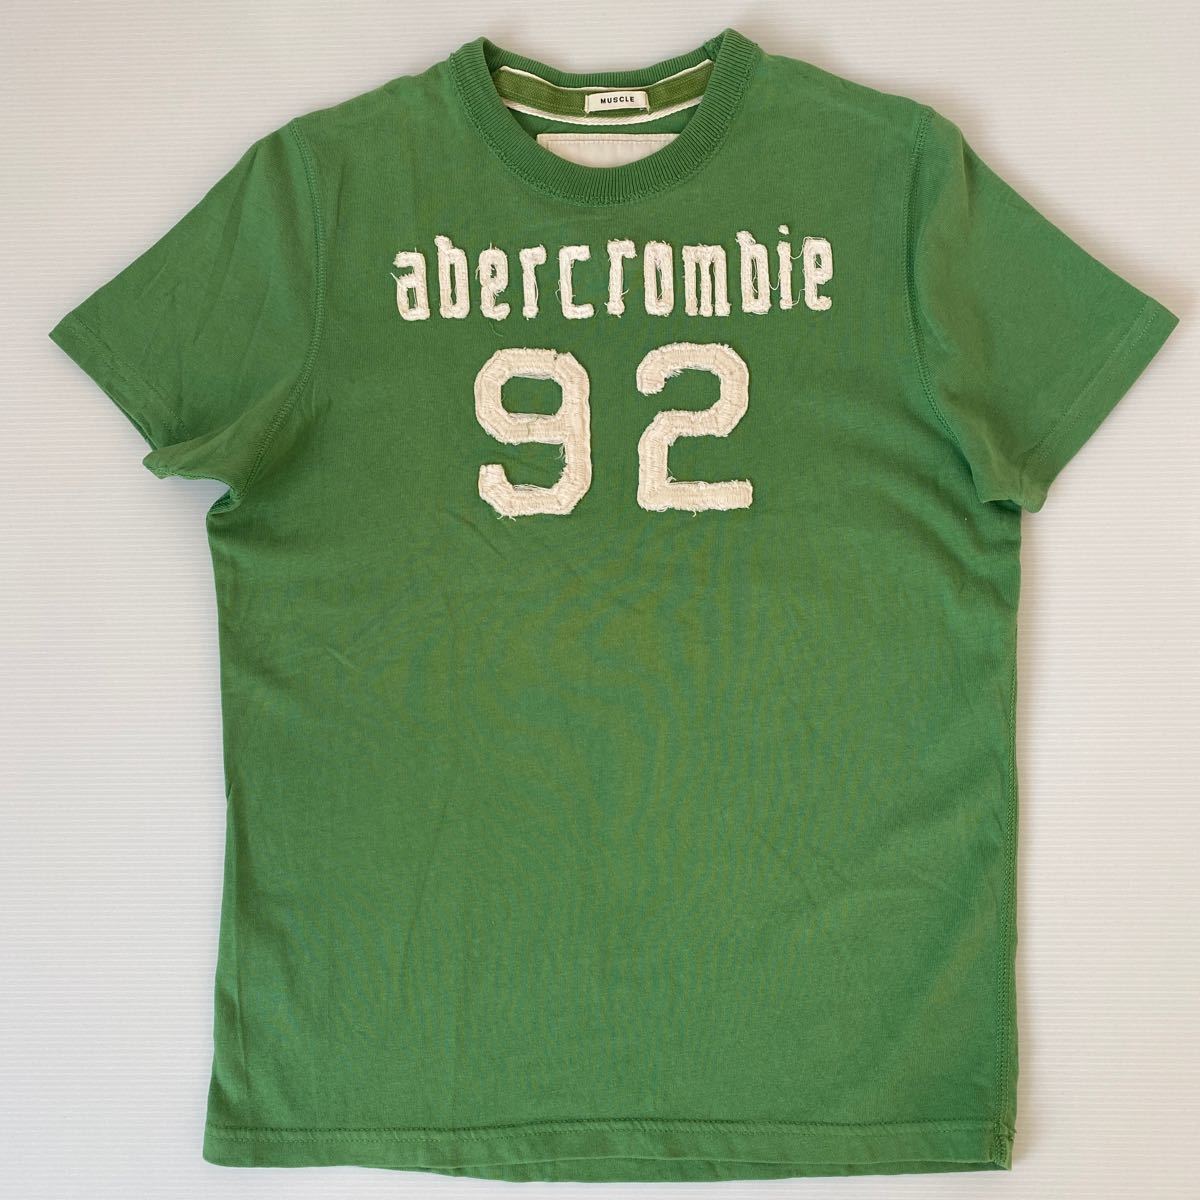 アバクロ Abercrombie & Fitch ボーイズTシャツL(メンズXXXS相当)1回着用 ロス購入 スクール系 ダメージユーズド加工女性OK ヴィンテージ